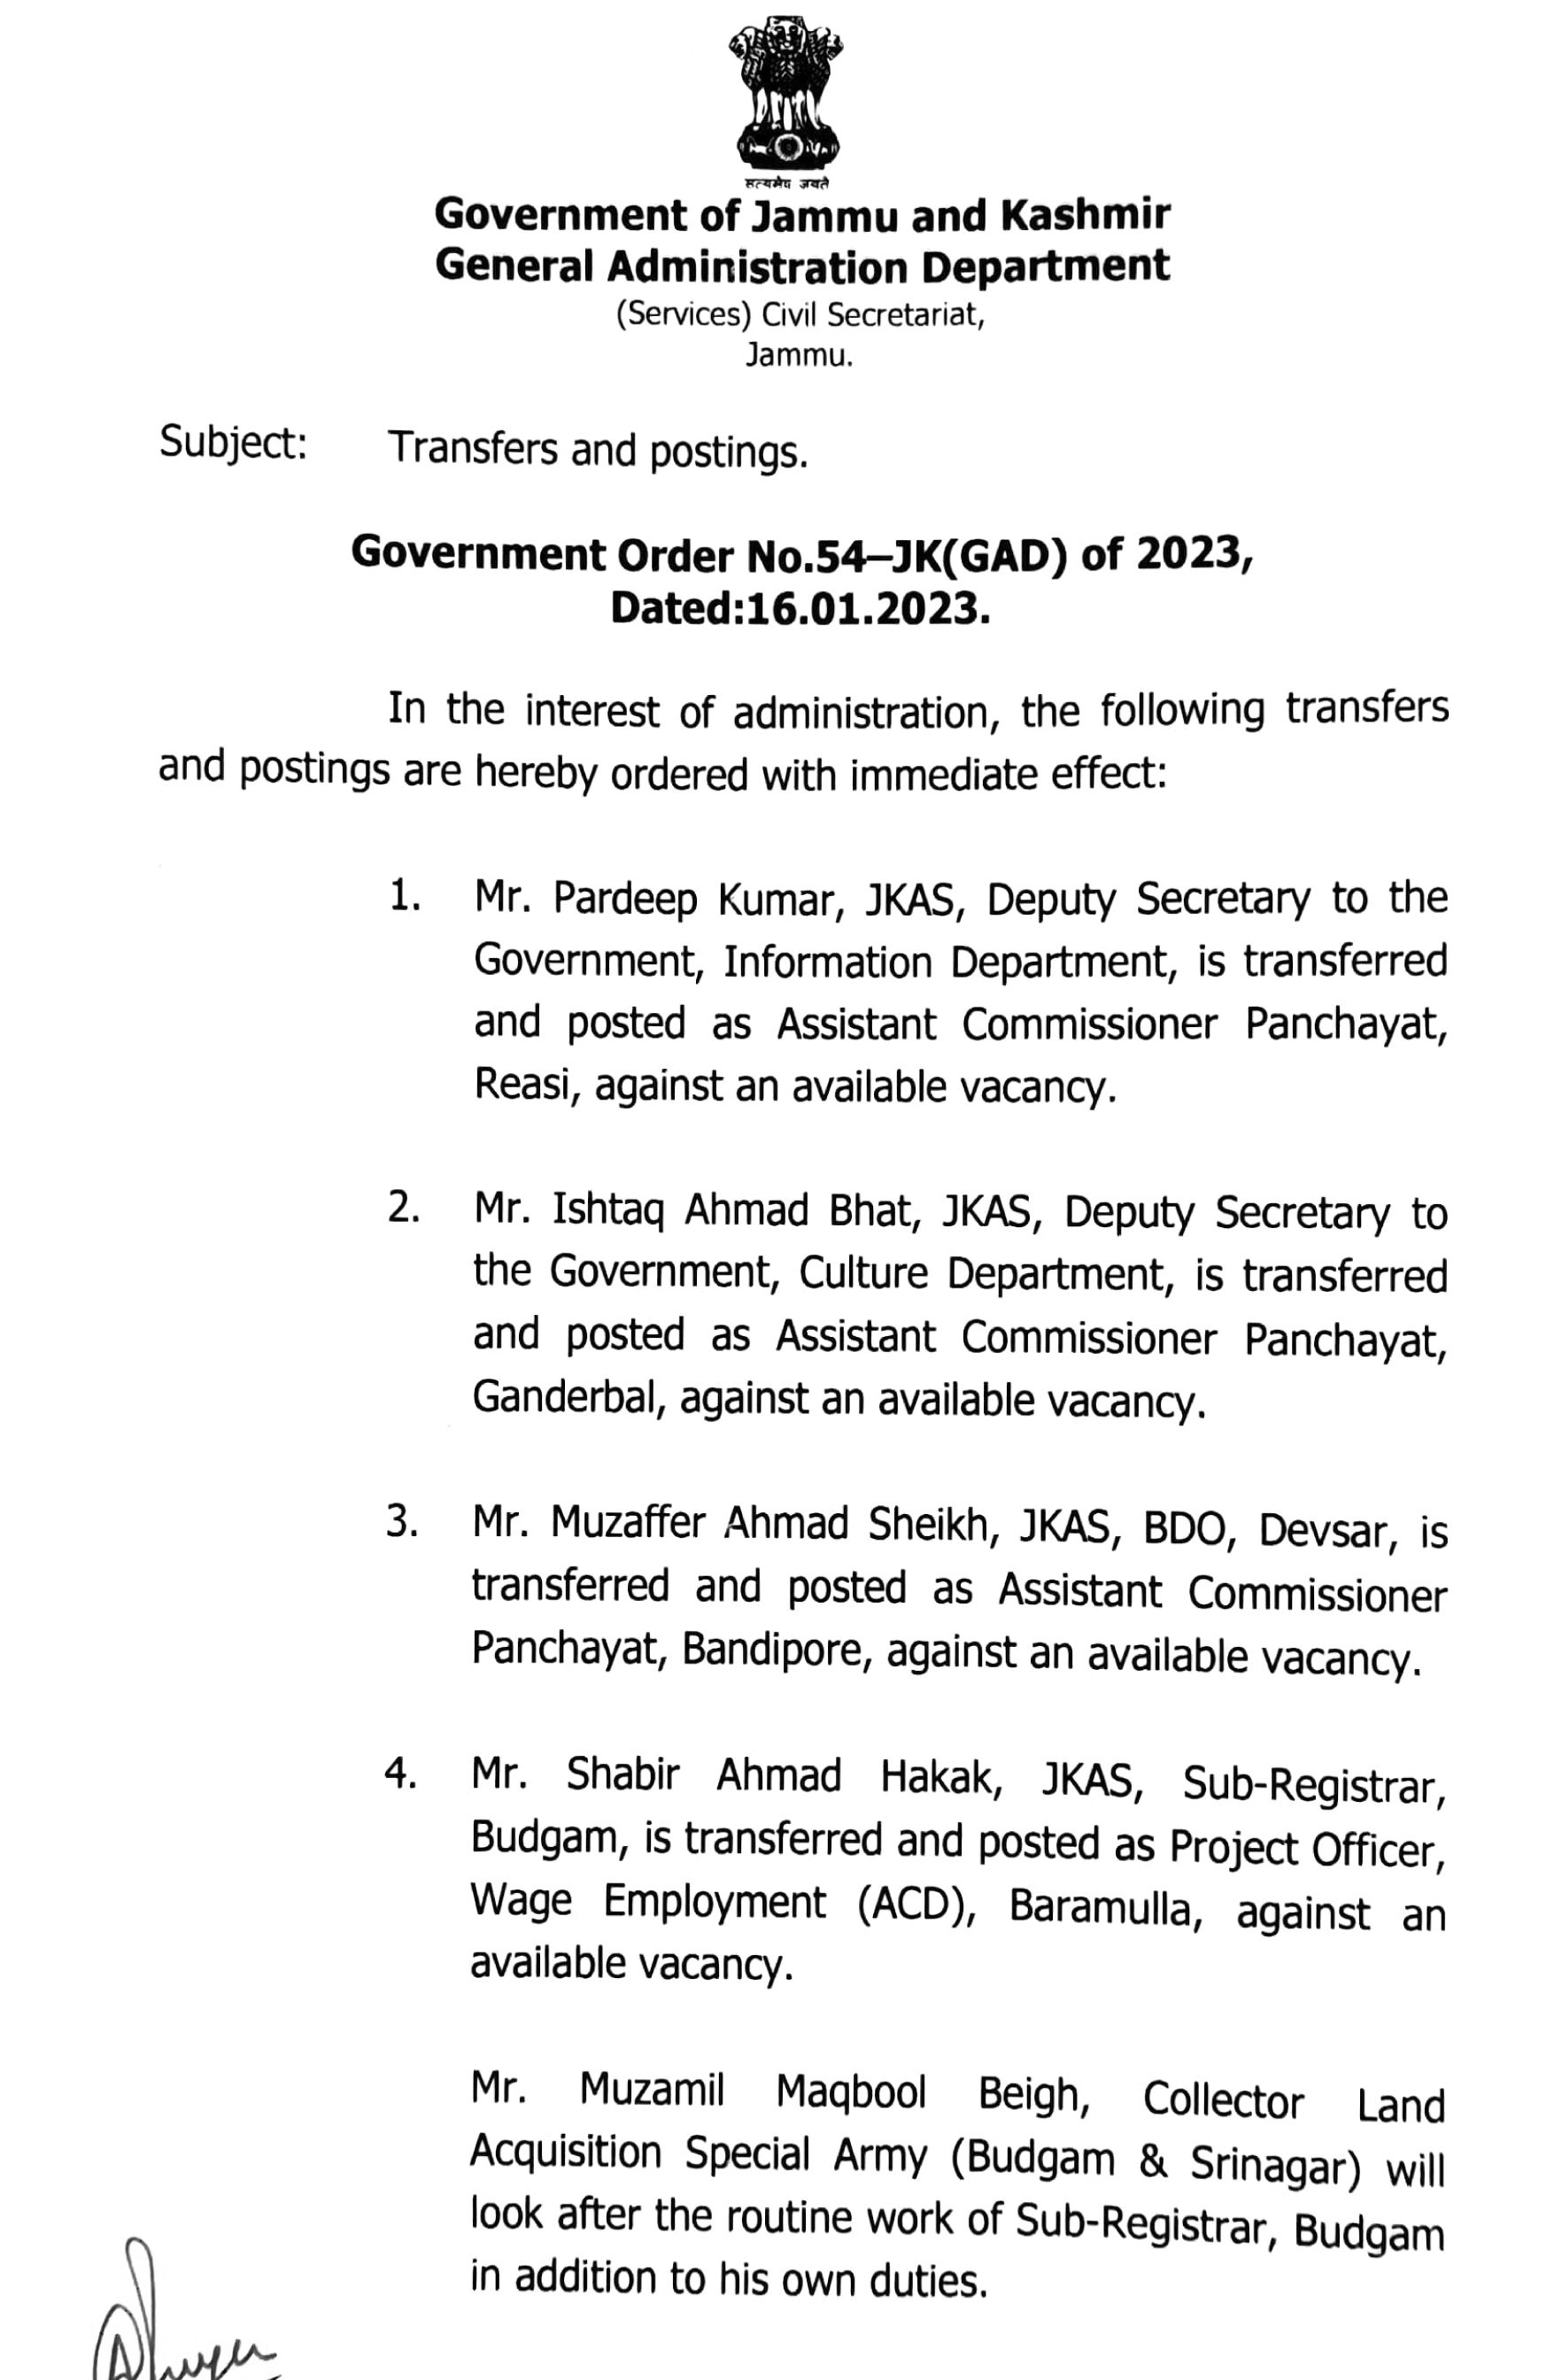 JK Govt Transfer And Posting Of 7 JKAS Officers